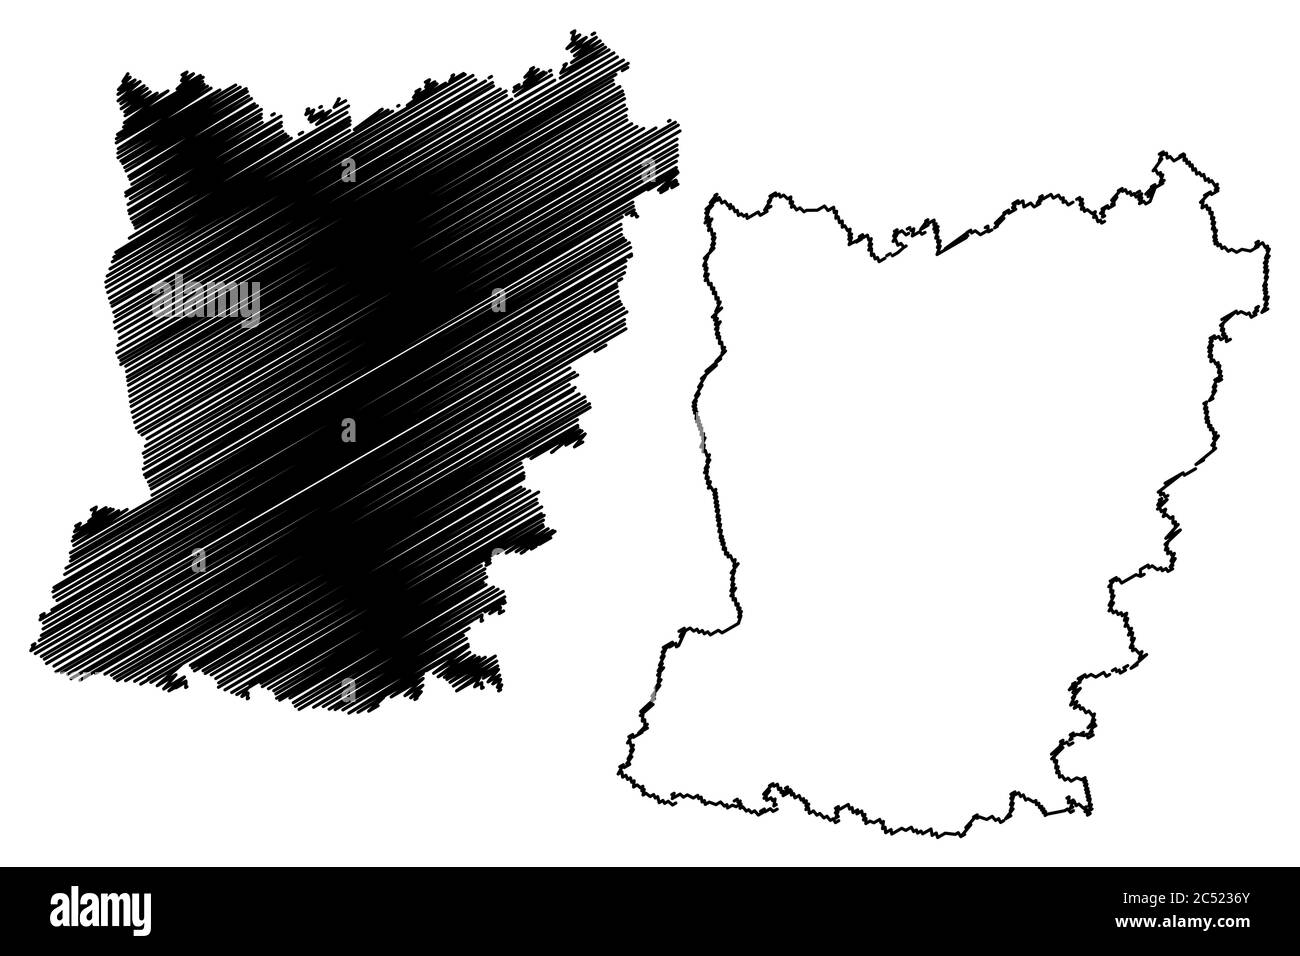 Dipartimento di Mayenne (Francia, Repubblica francese, regione della Loira) mappa vettoriale illustrazione, schizzo di scrimolo mappa di Mayenne Illustrazione Vettoriale